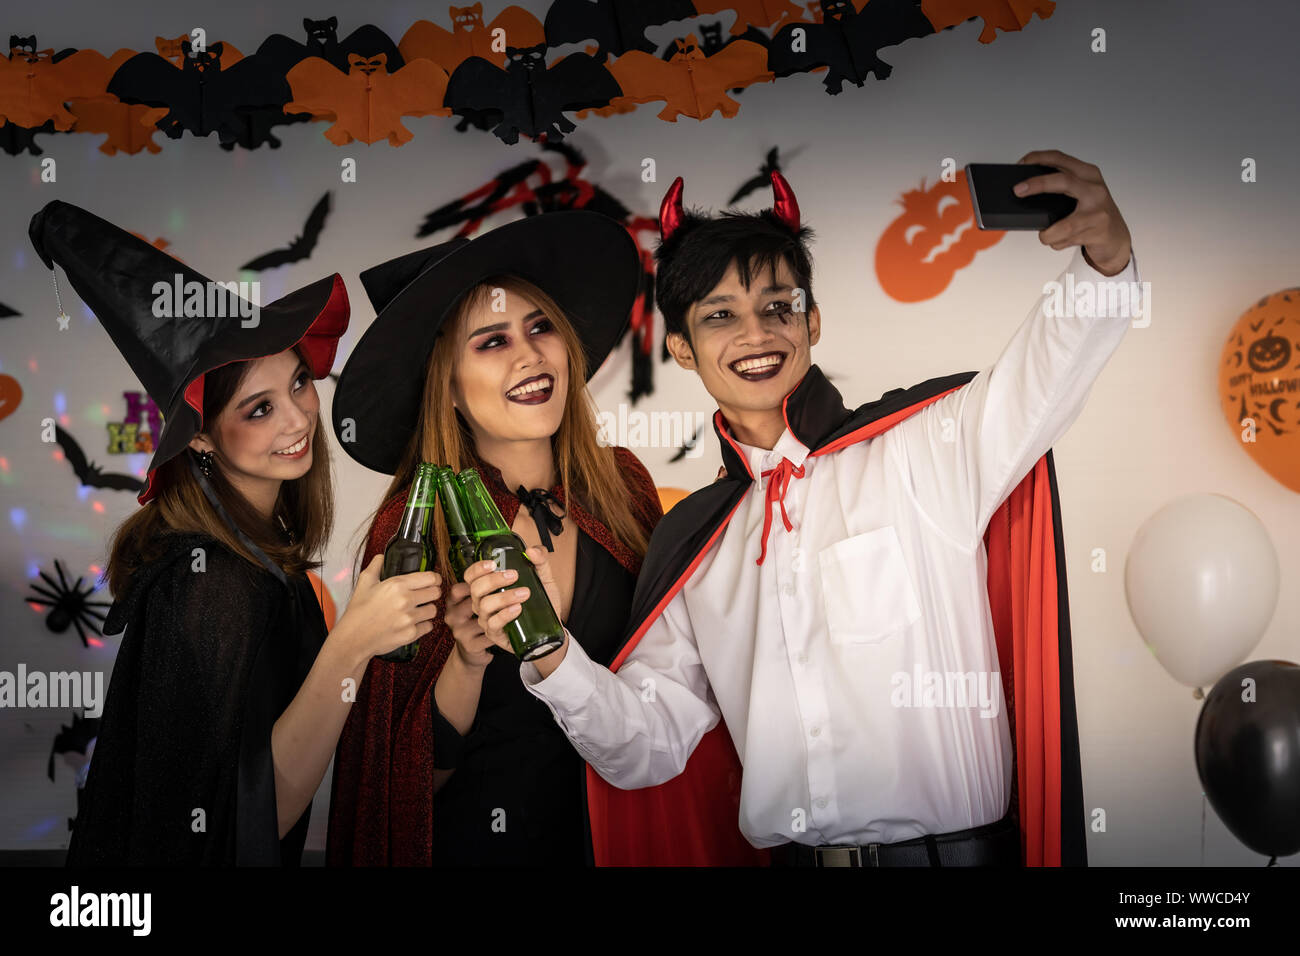 Gruppe für junge Erwachsene und jugendliche Menschen feiern eine Halloween  Party Karneval in Halloween Kostüme Alkohol trinken Bier und selfie p  Stockfotografie - Alamy